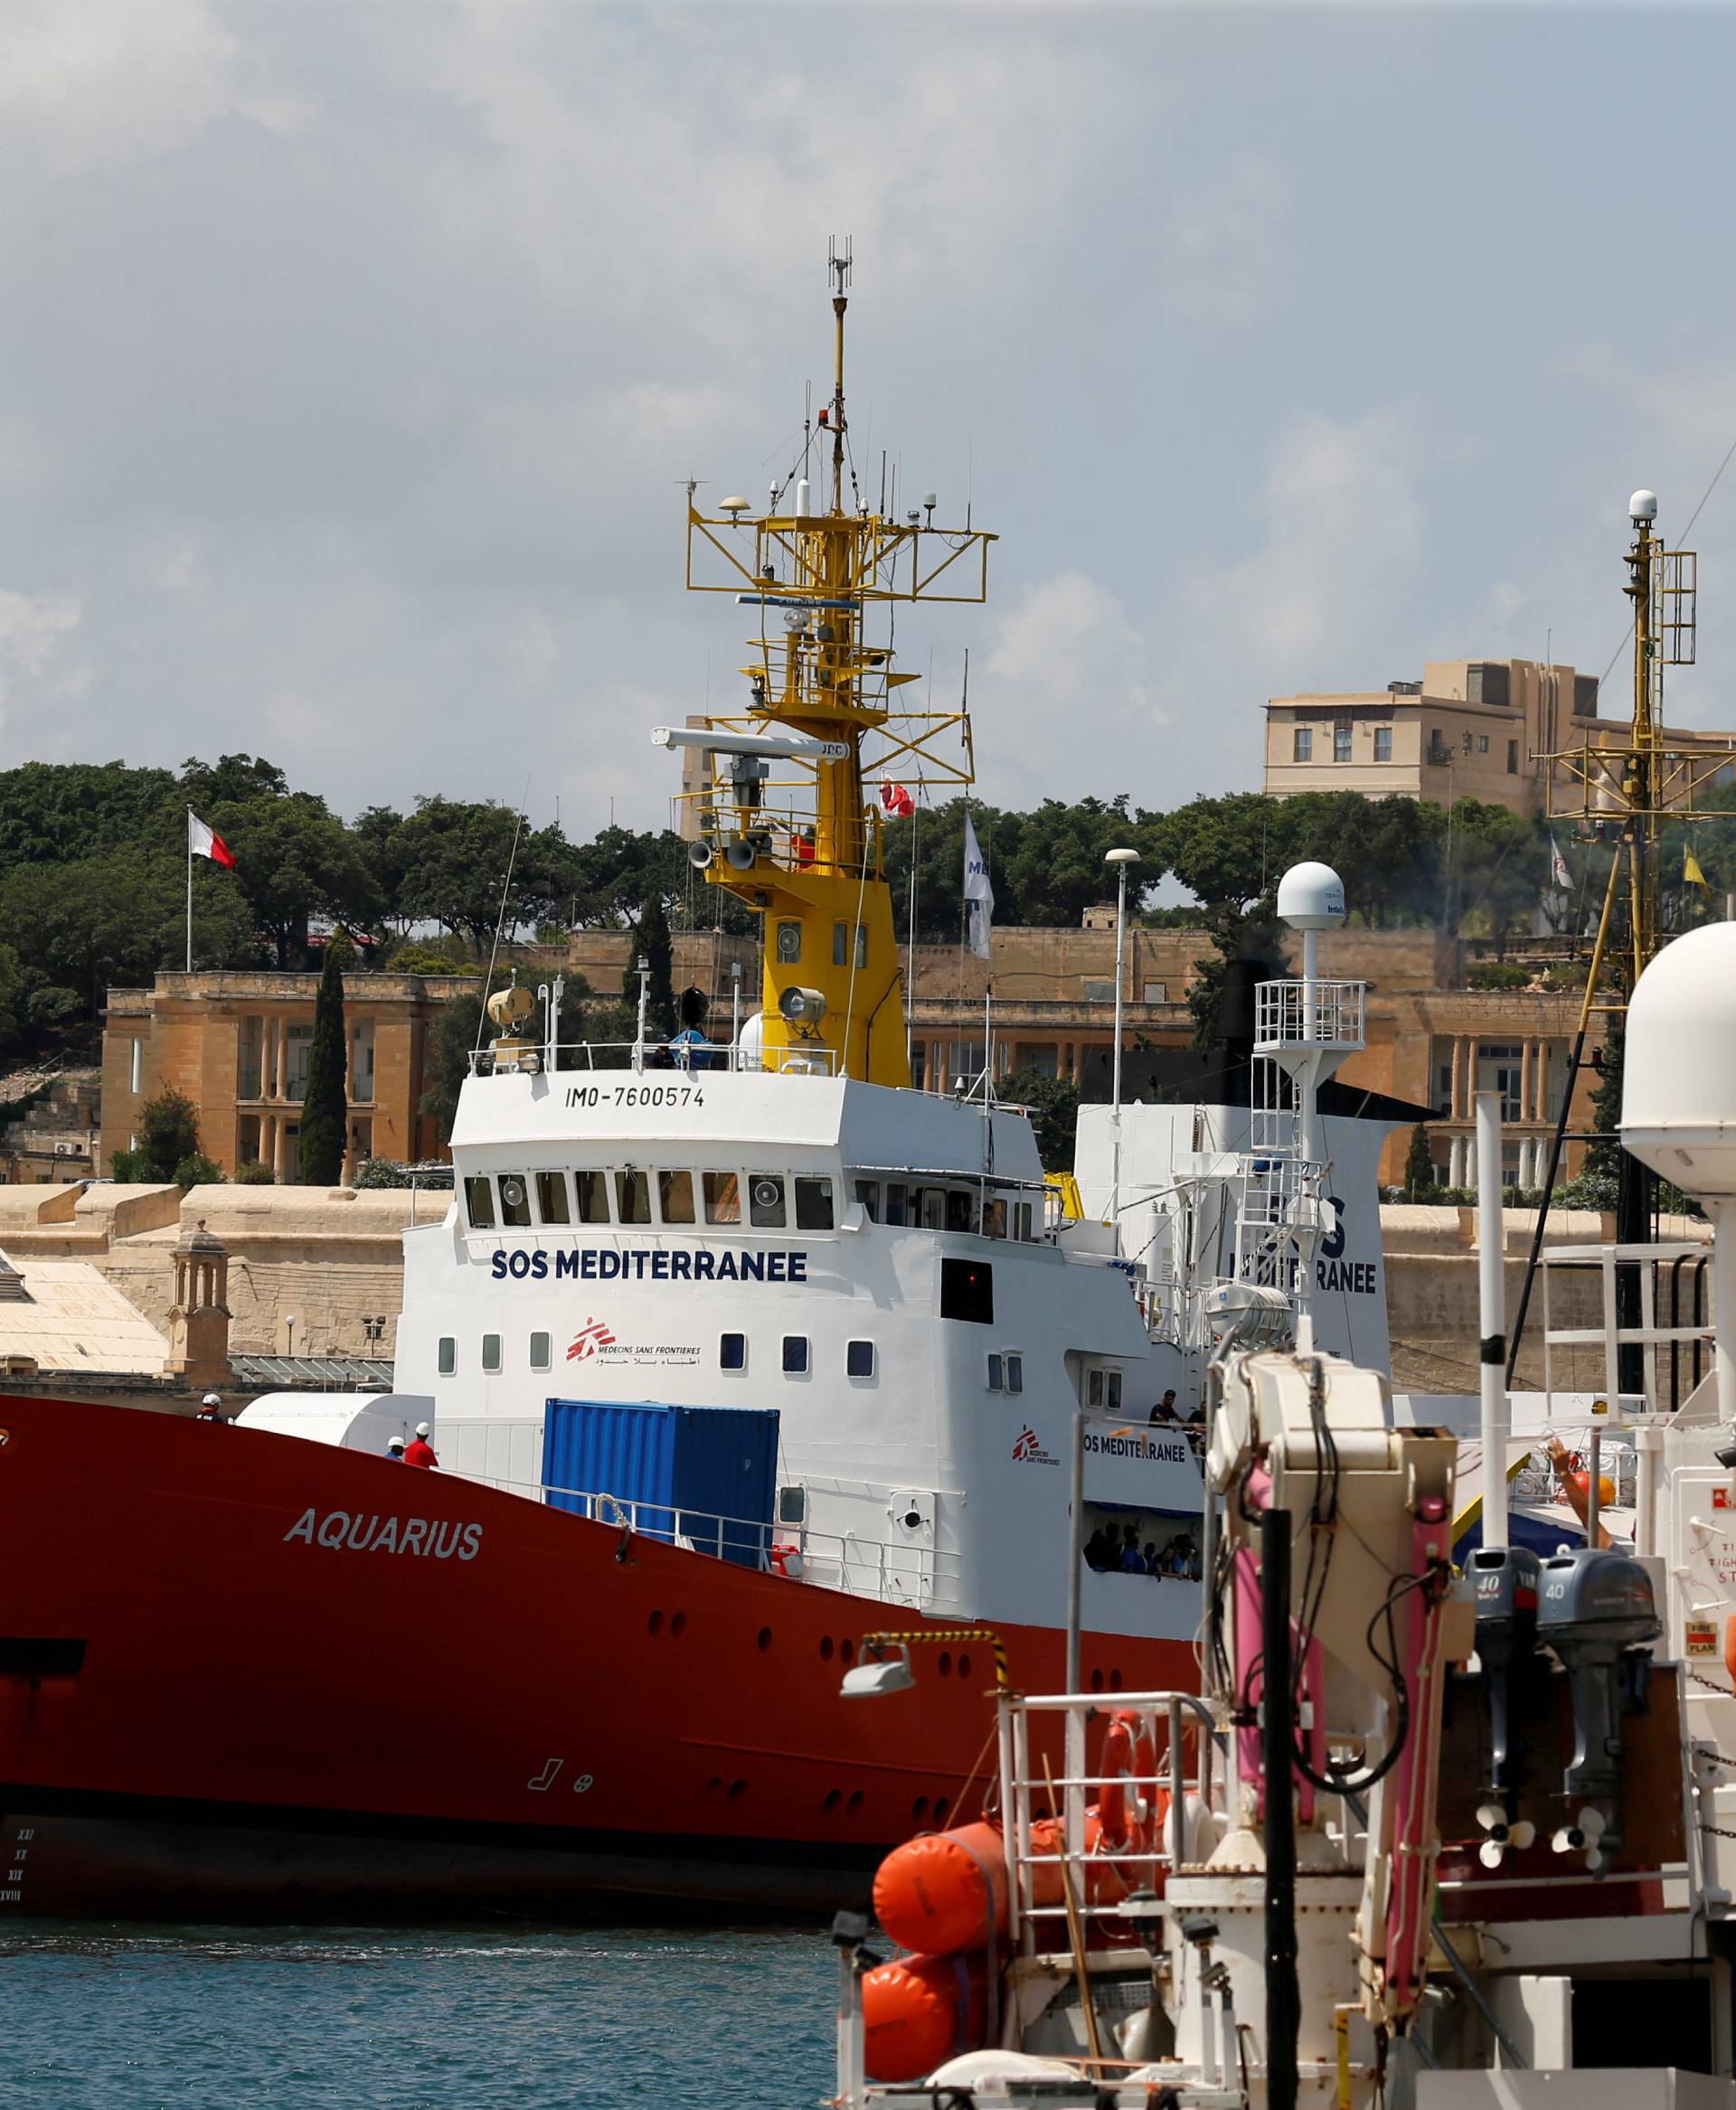 FILE PHOTO: The humanitarian ship Aquarius is seen at Boiler Wharf in Senglea